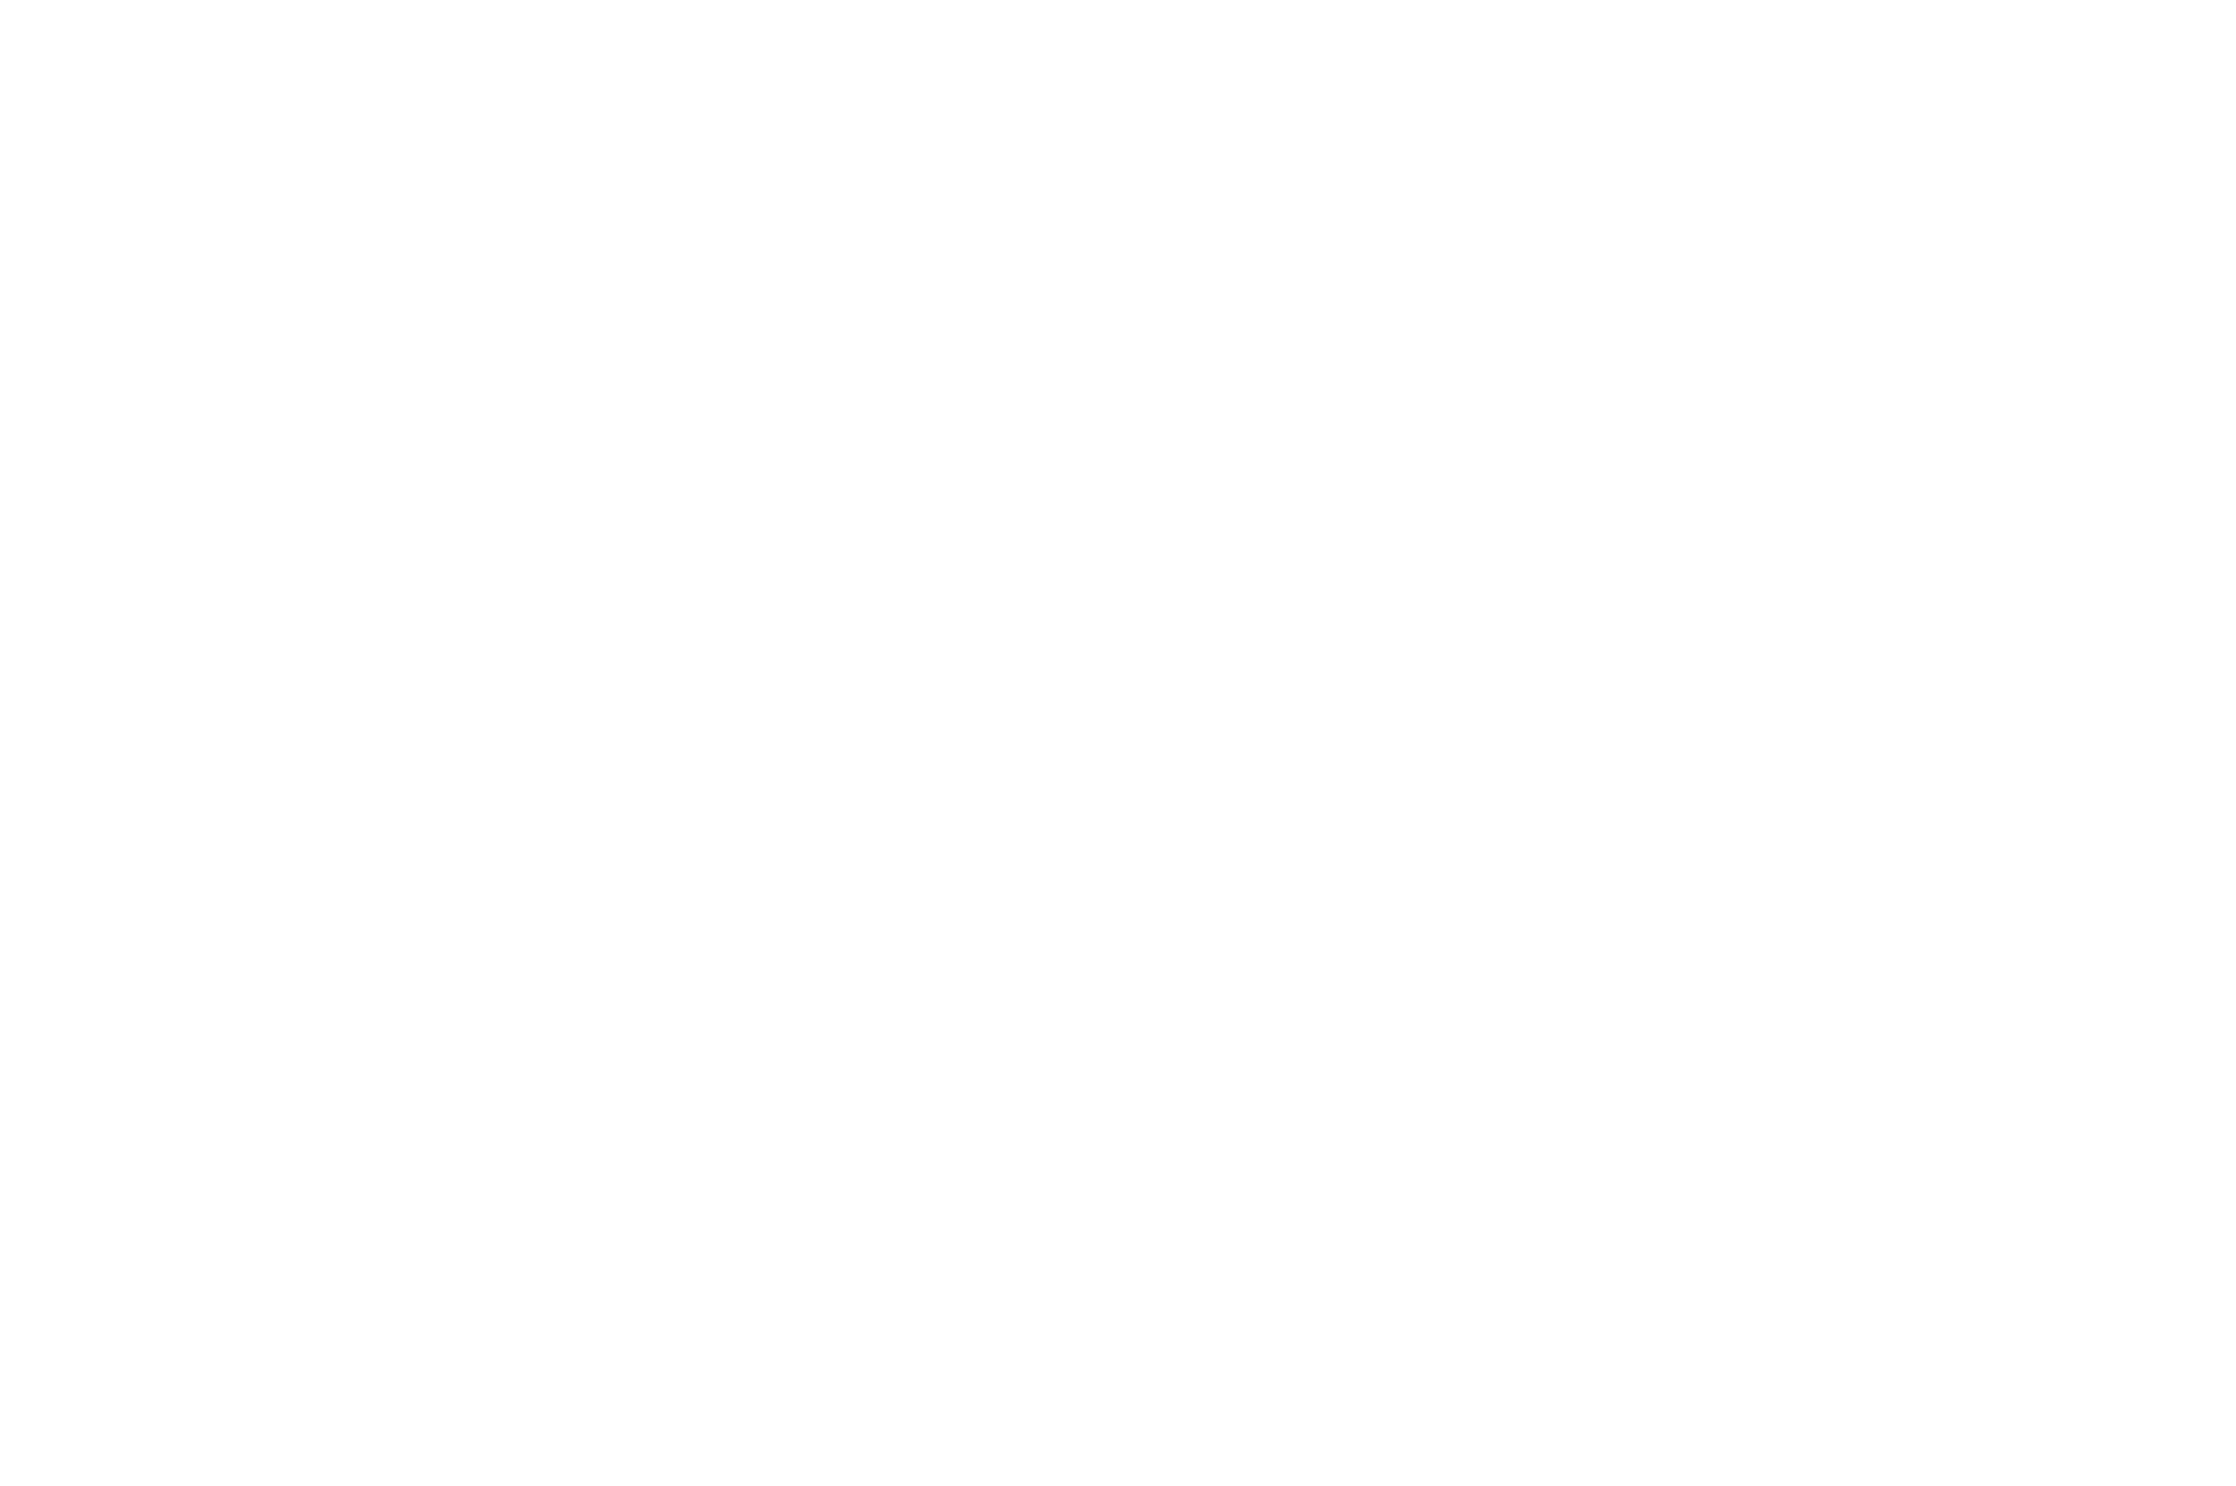 WB Built Construction